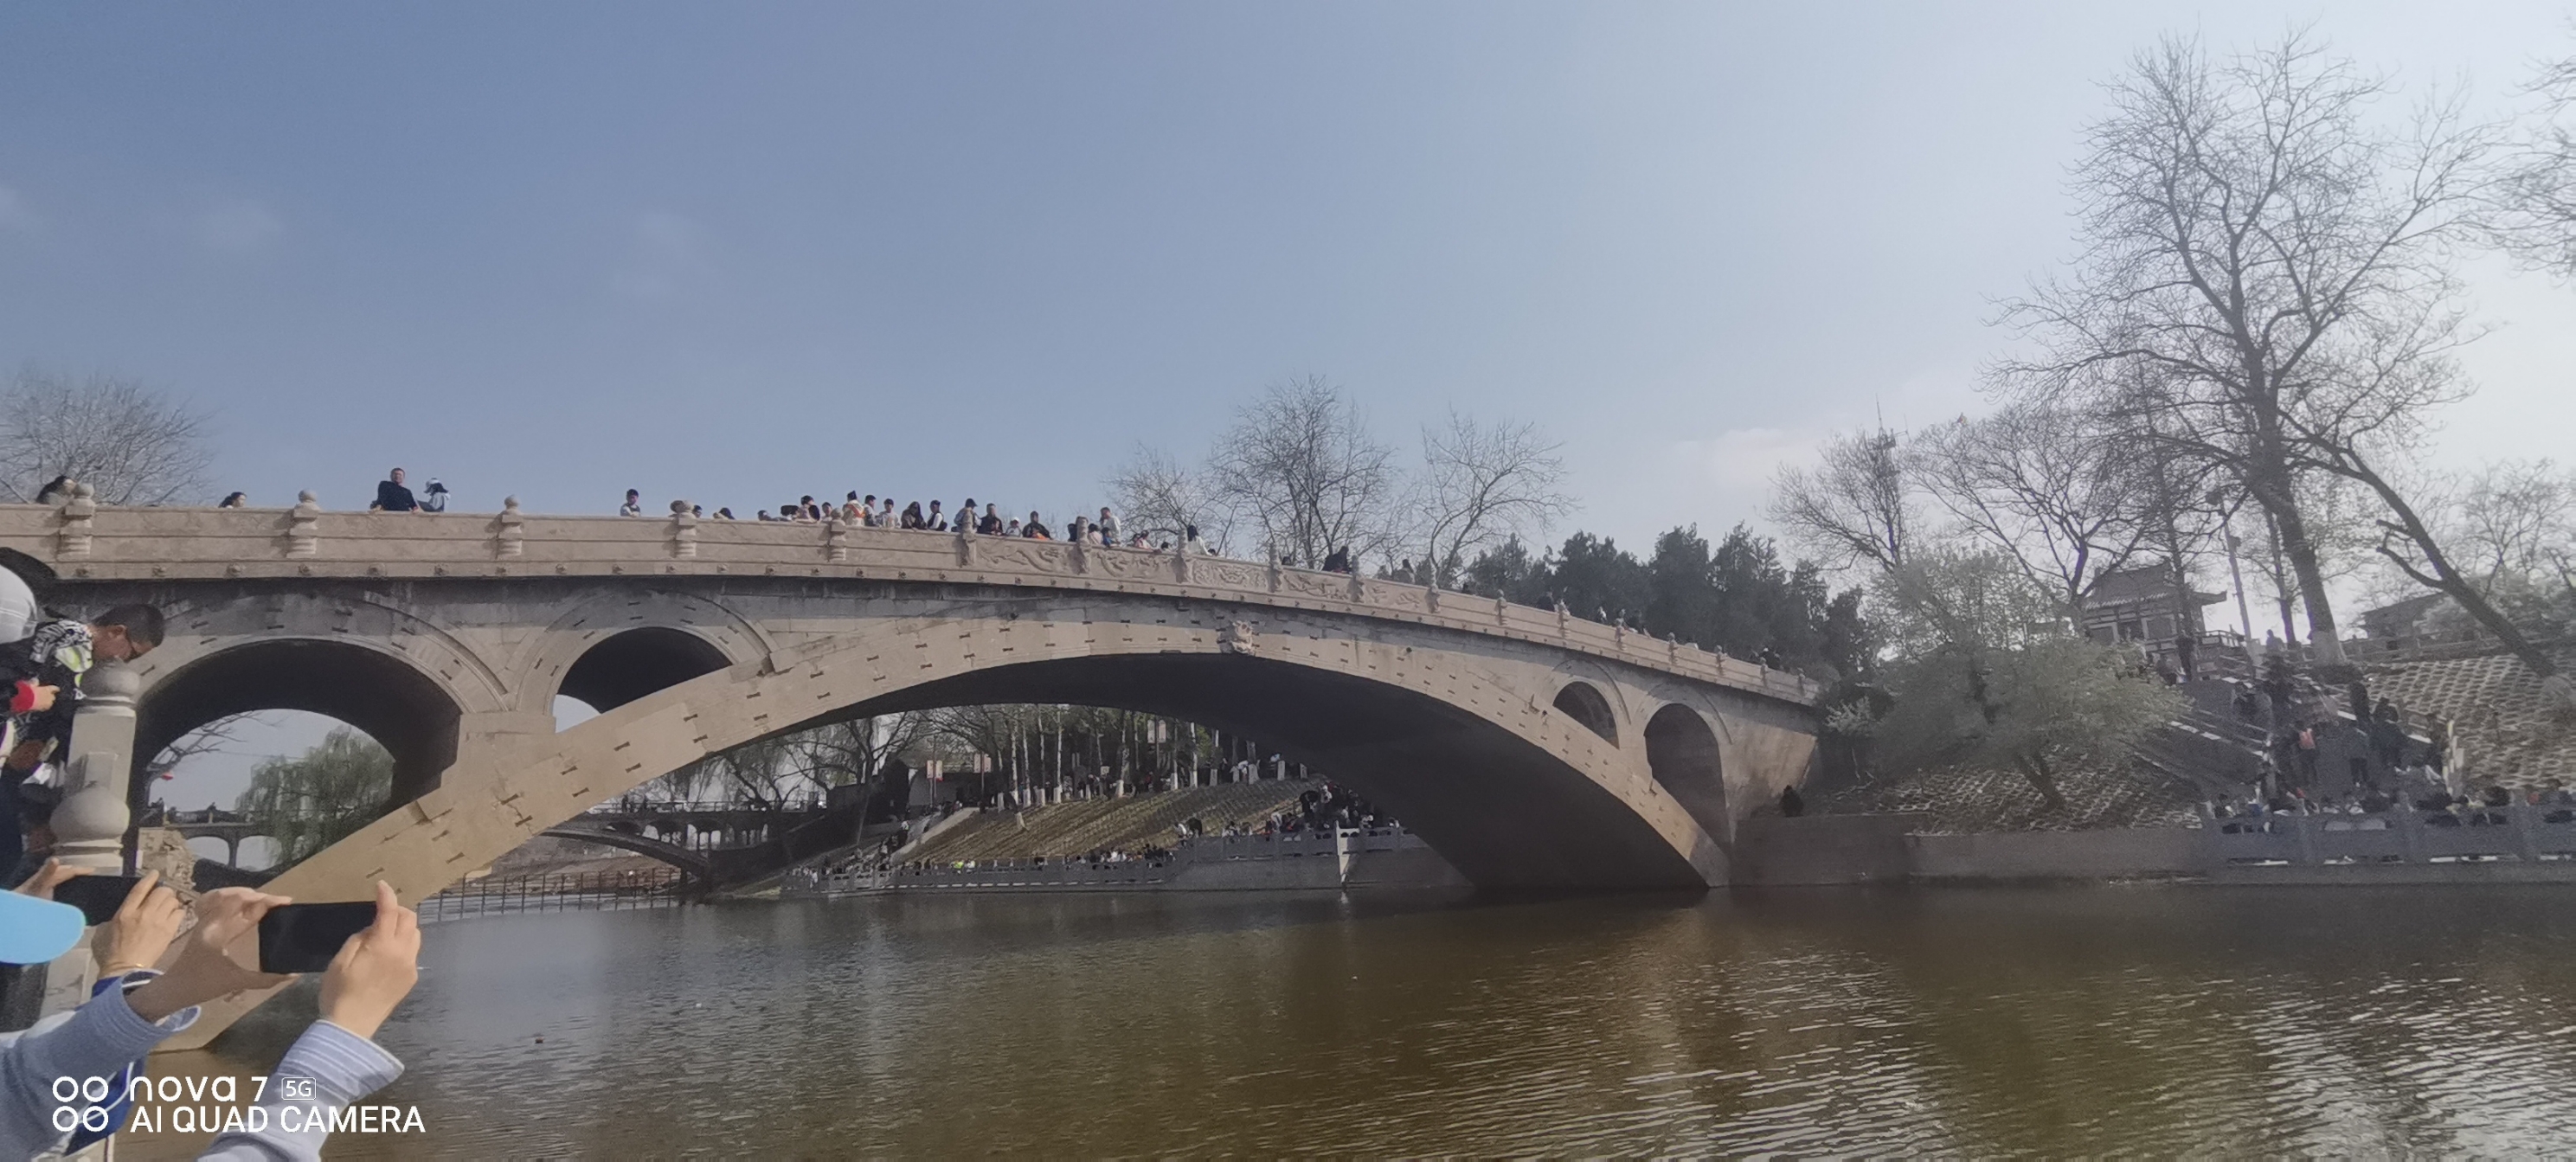 原来小学课表里的赵州桥也可以照进现实呀！#值得去的古镇古村